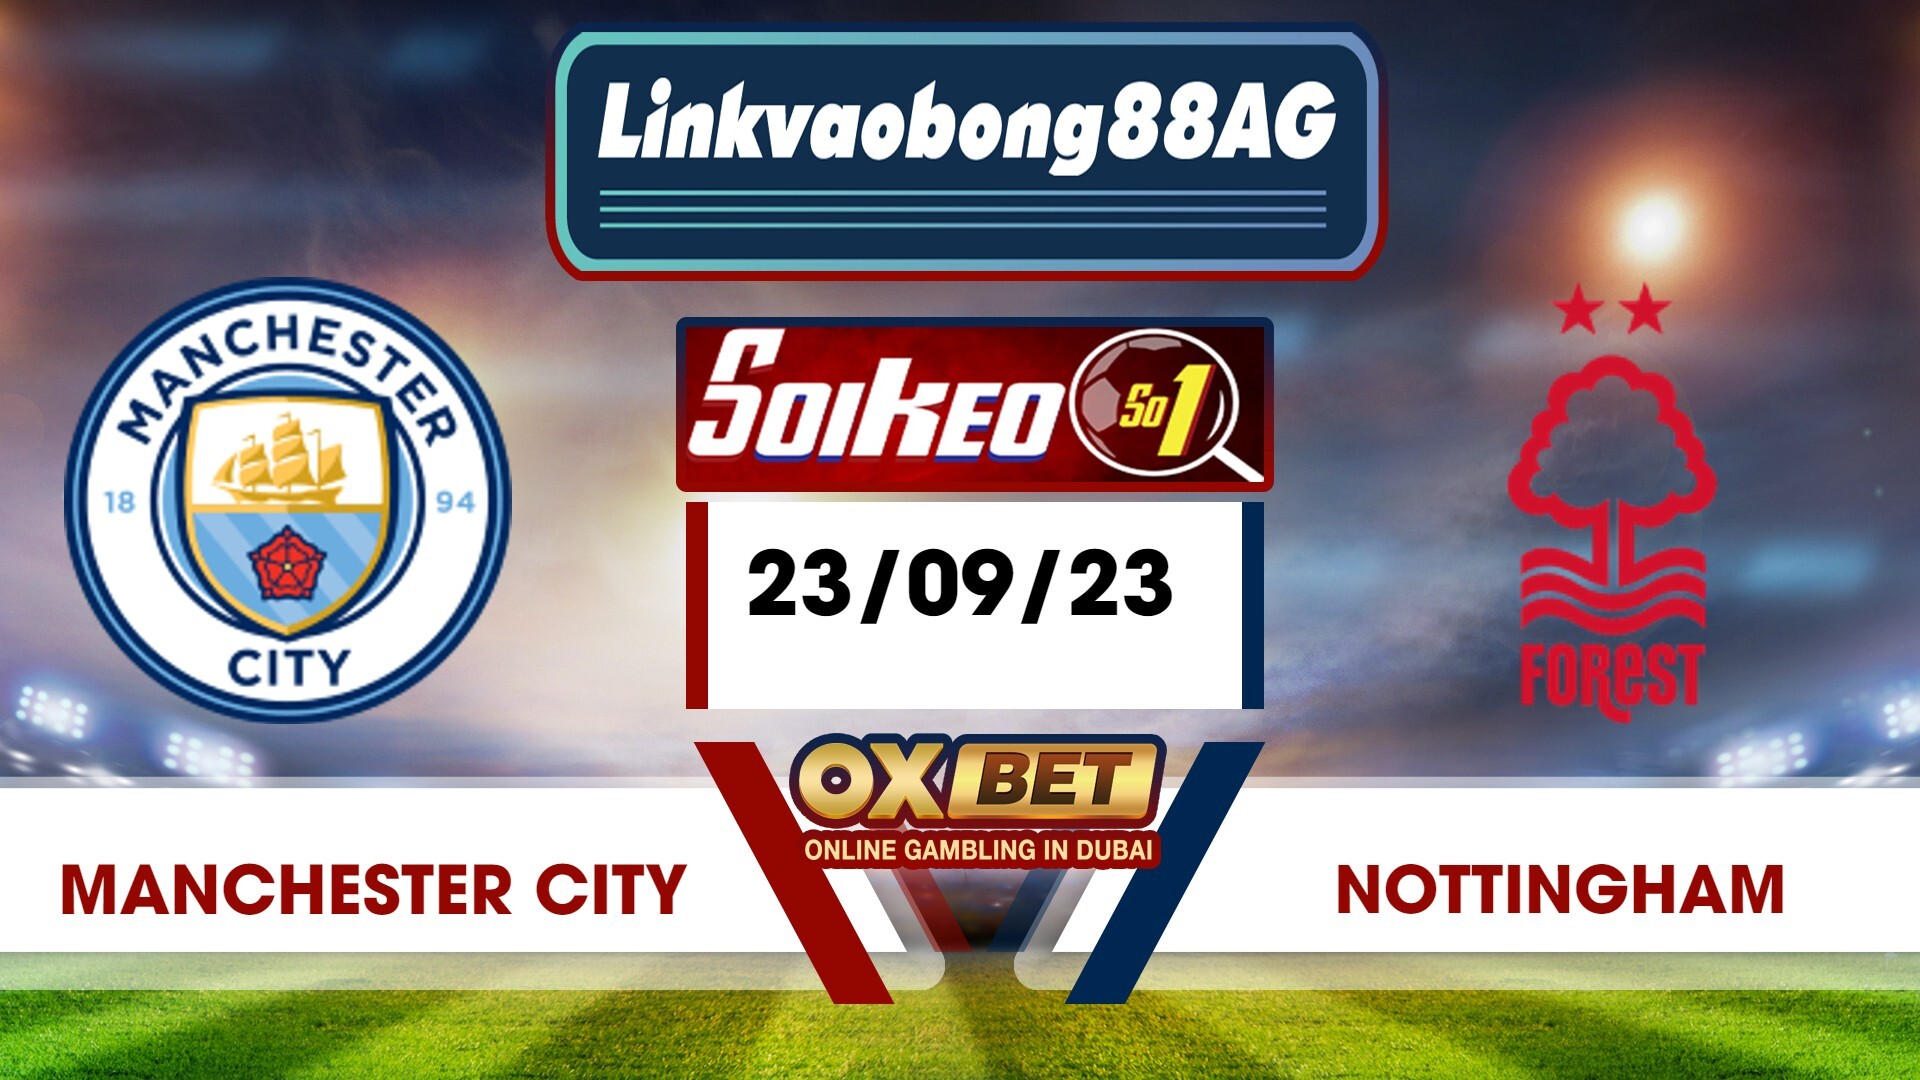 Soi kèo Bong88 Manchester City vs Nottingham – 23/09/2023 – 21h00 Tối